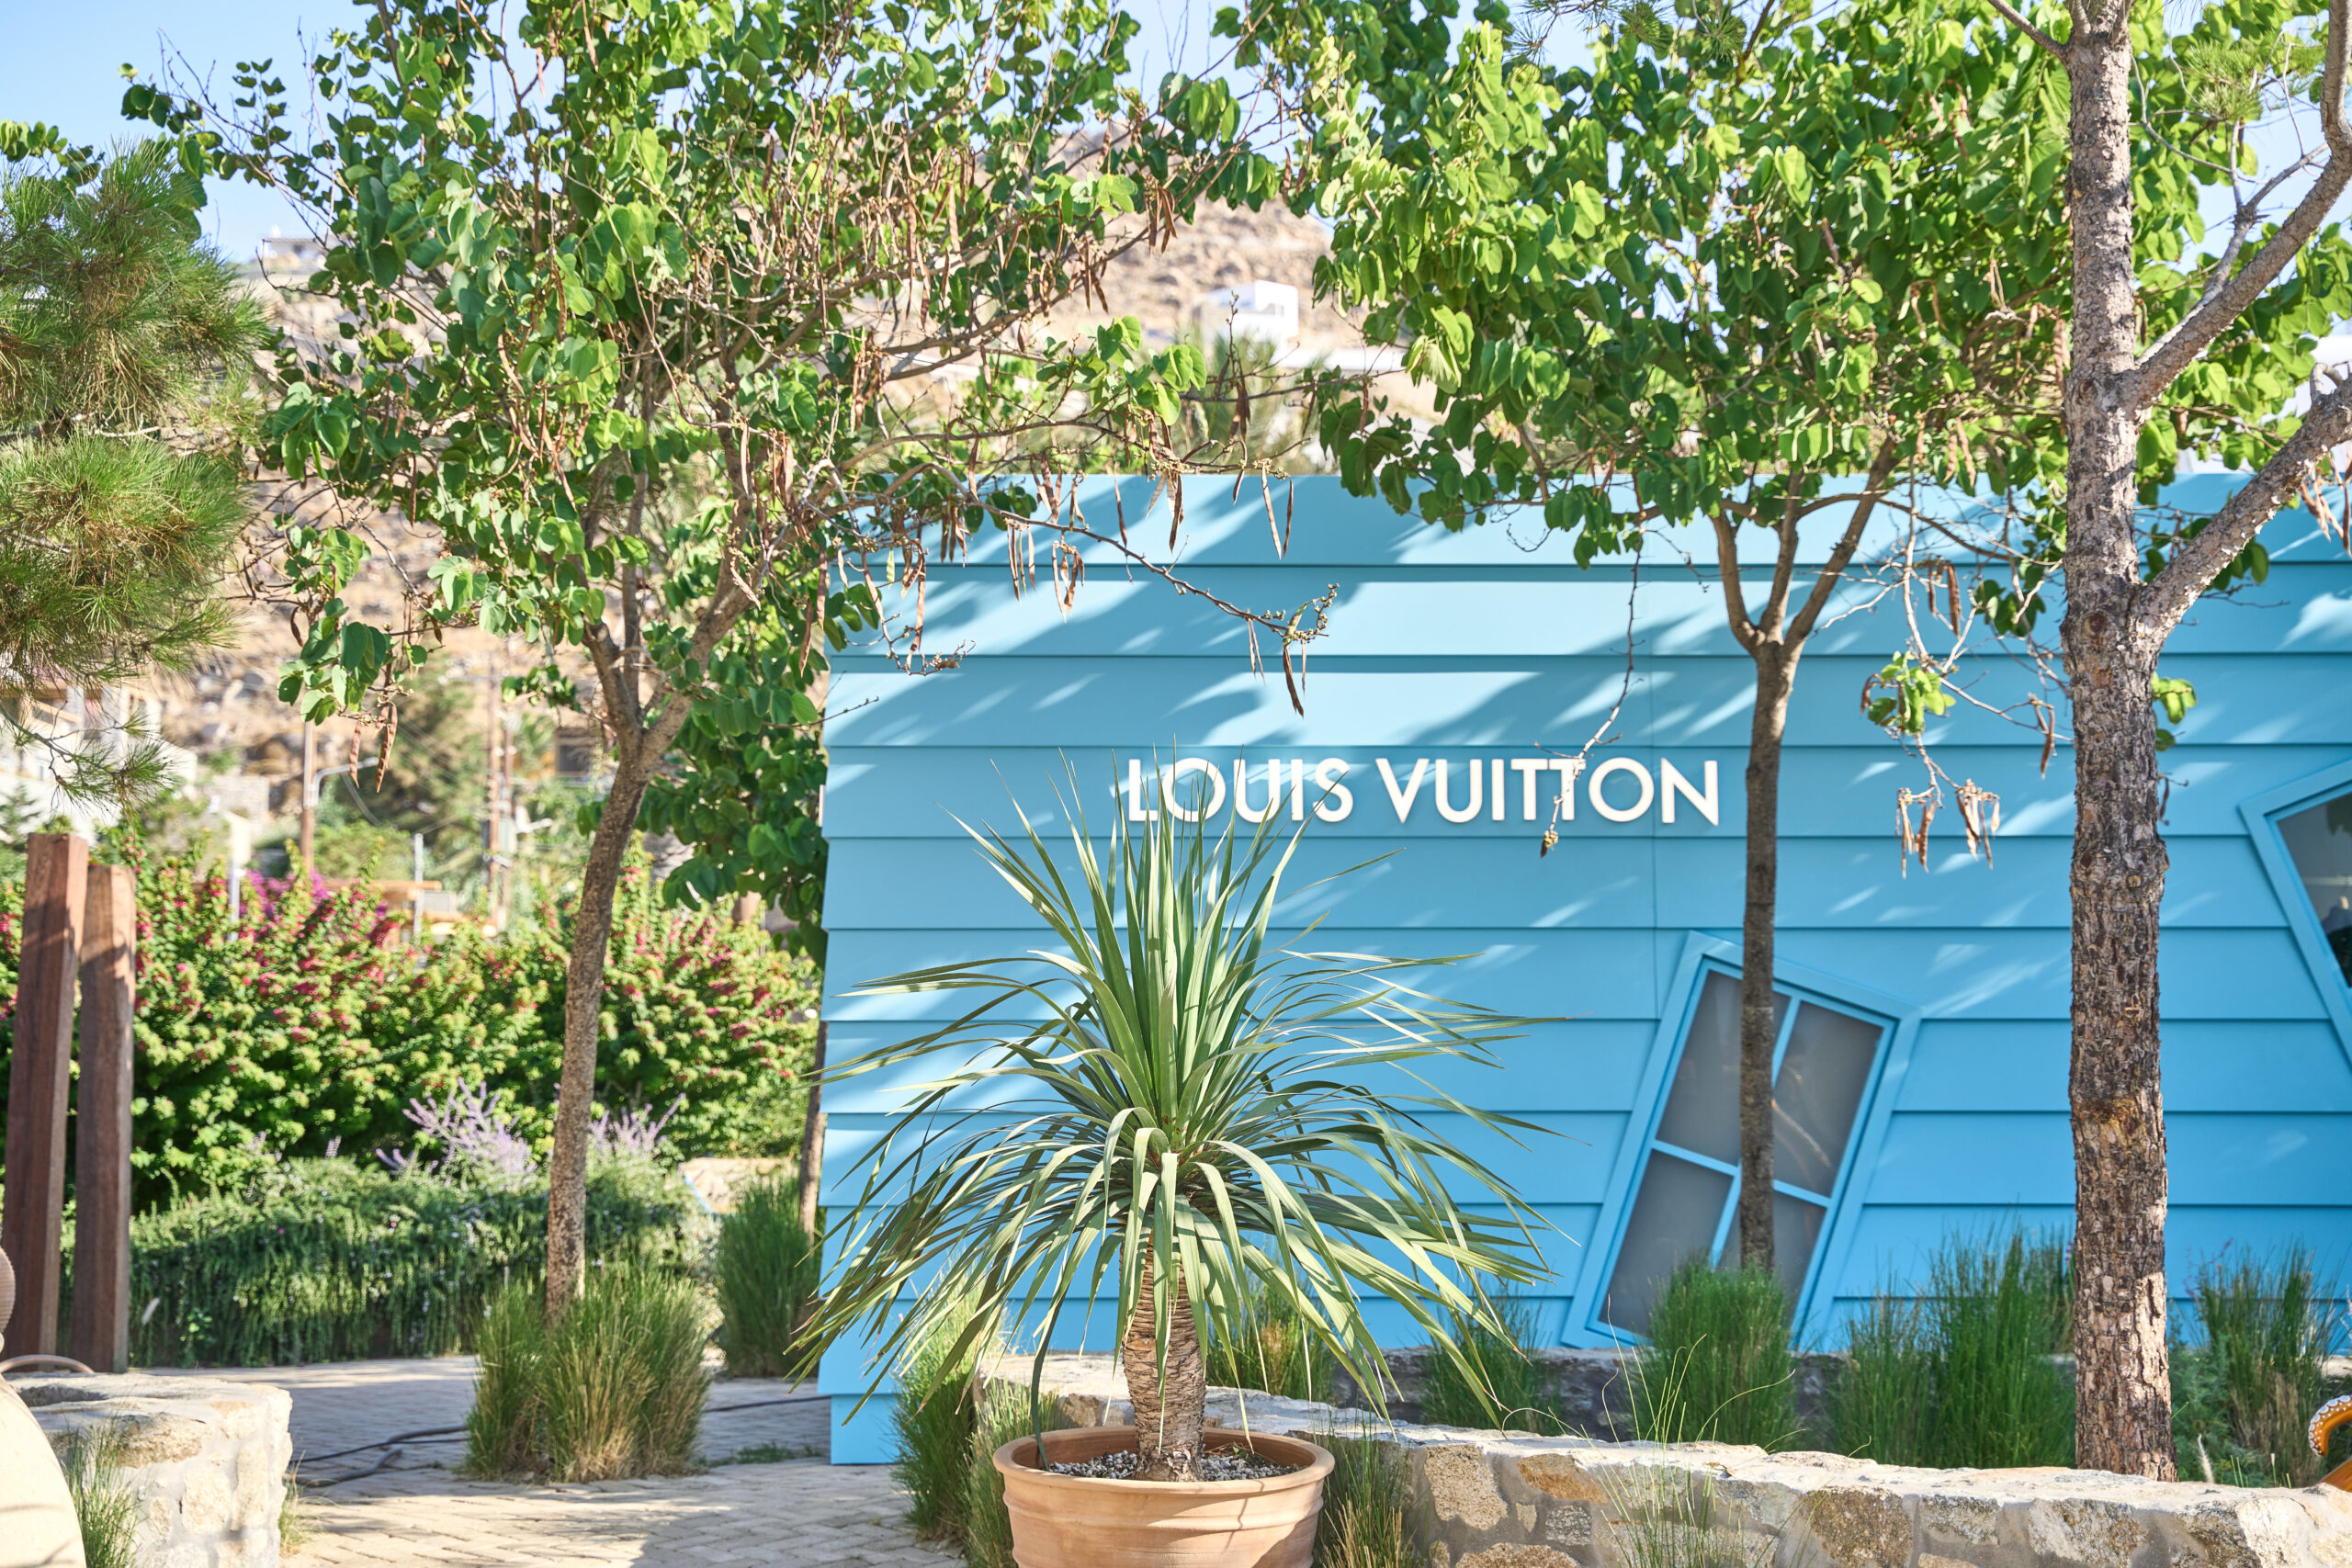 Louis Vuitton pops up in Mykonos!